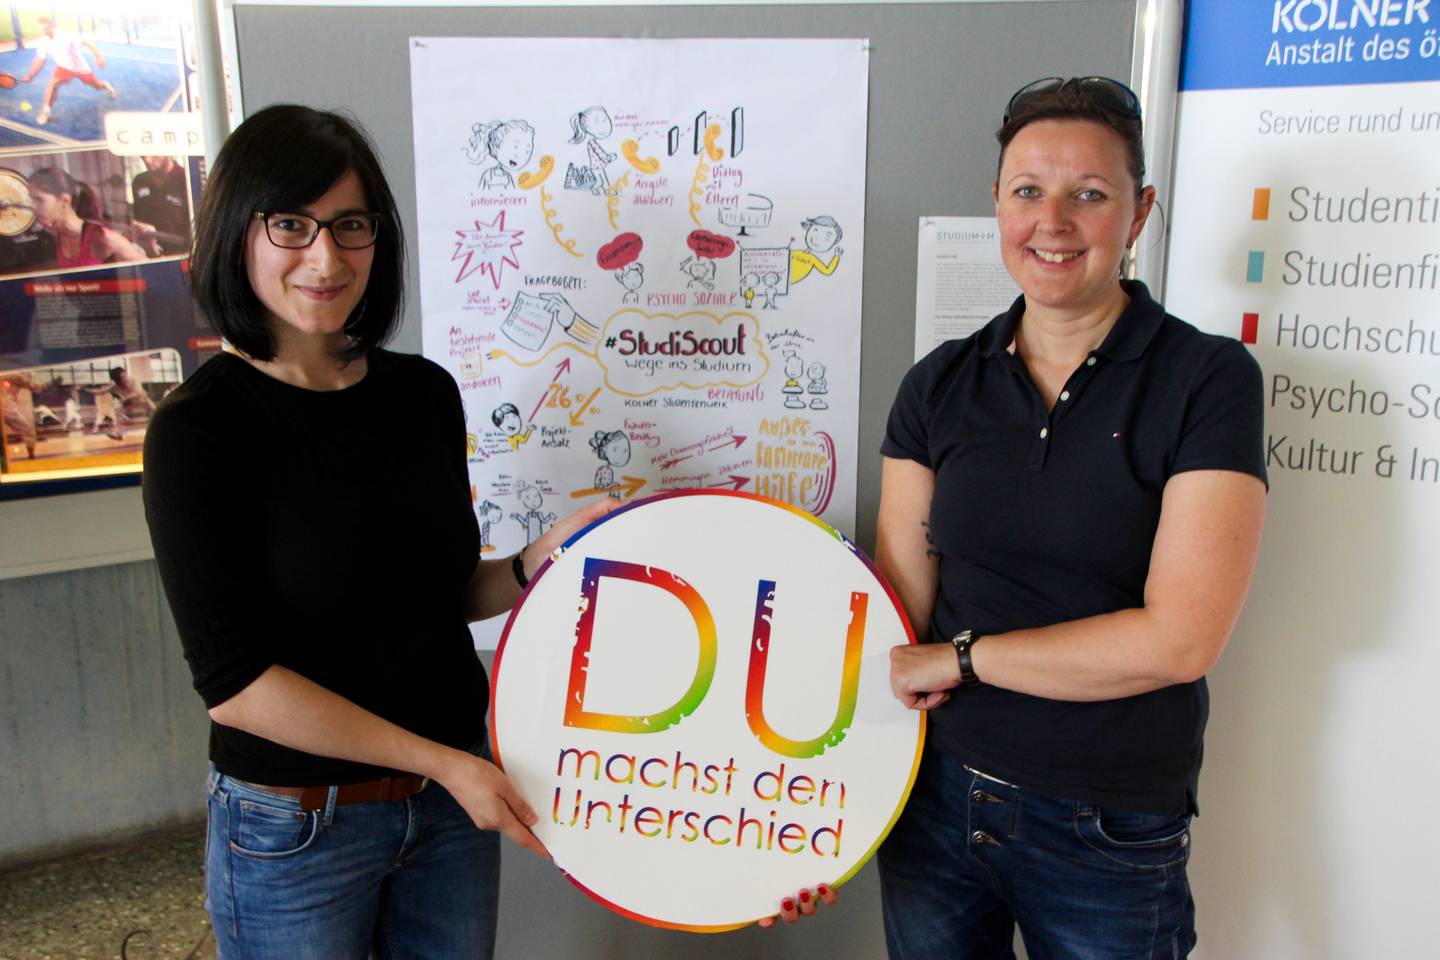 Zwei Organisatorinnen des StudiScouts, die das Logo der Themenwoche "Du machst den Unterschied" gemeinsam in den Händen halten.